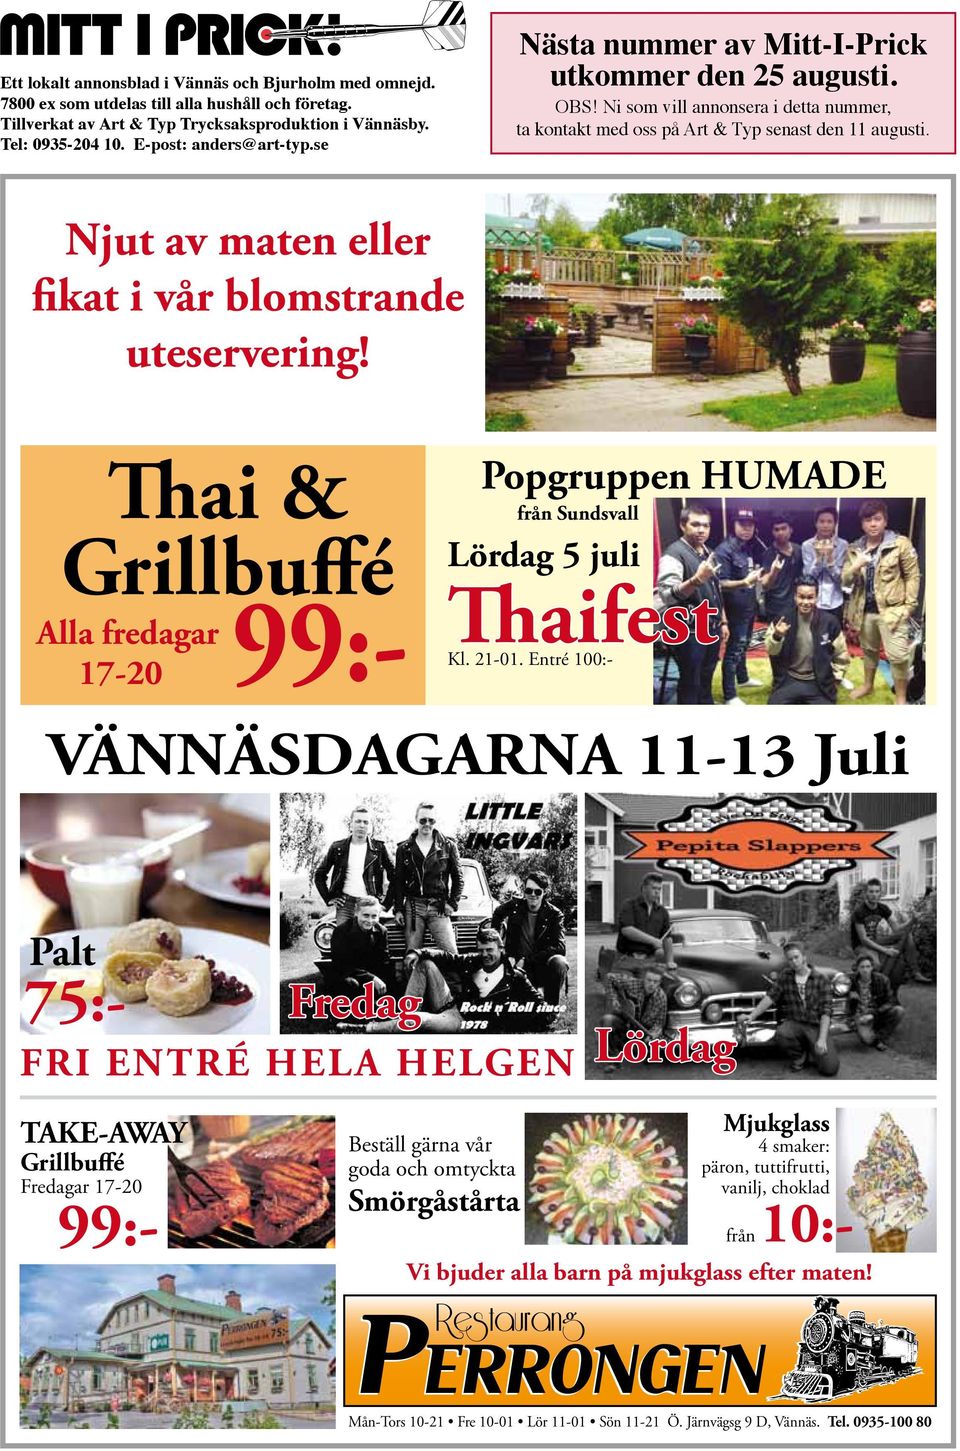 Njut av maten eller fikat i vår blomstrande uteservering! Thai & Grillbuffé 99:- Alla fredagar 17-20 Popgruppen HUMADE från Sundsvall Lördag 5 juli Thaifest Kl. 21-01.